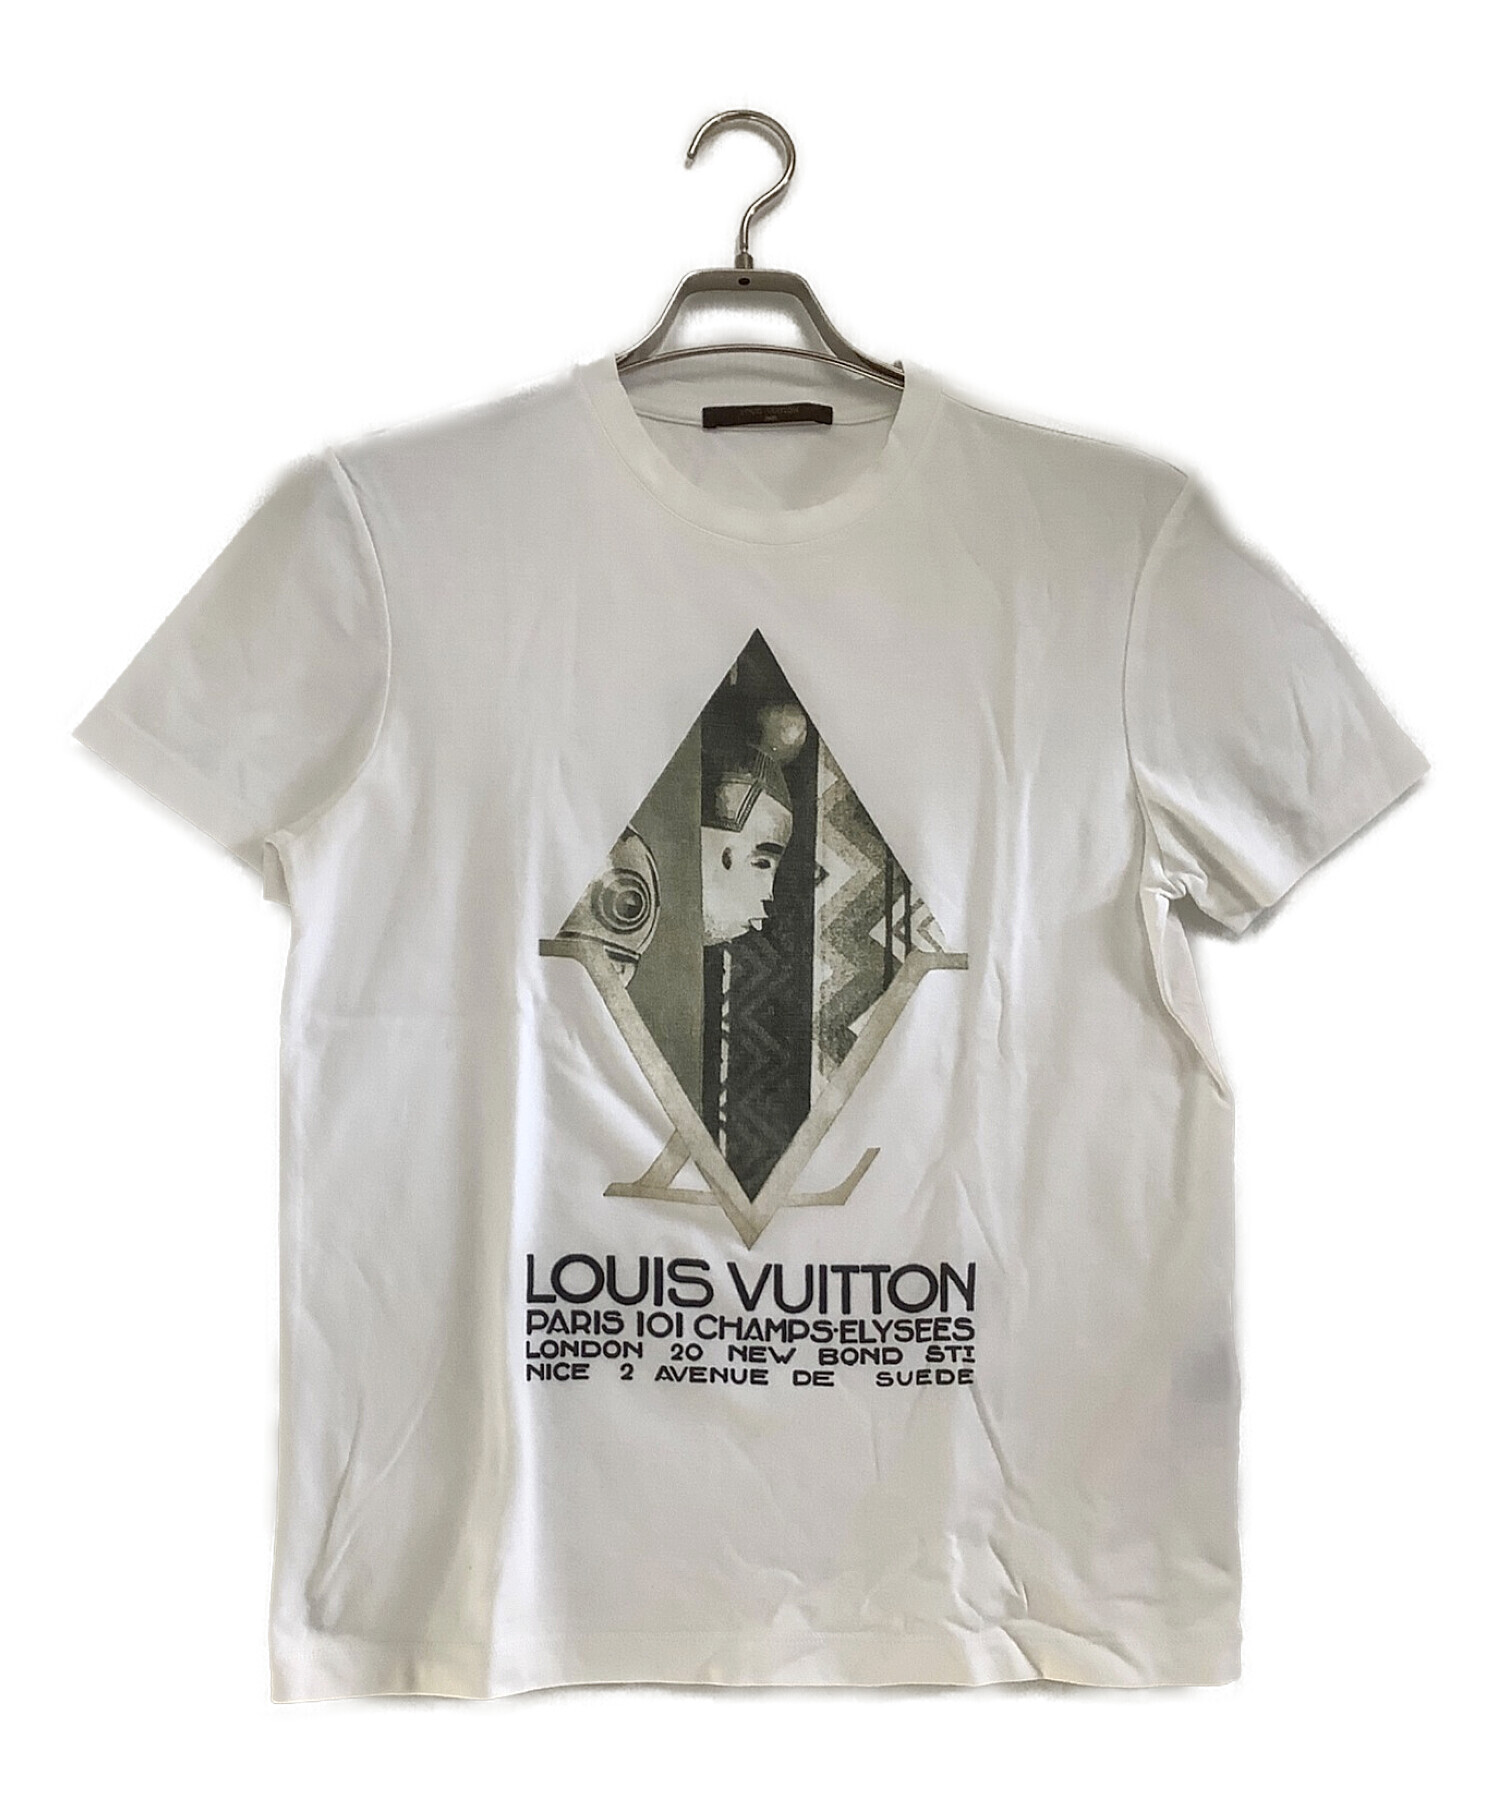 LOUIS VUITTON (ルイ ヴィトン) プリントTシャツ ホワイト サイズ:XS